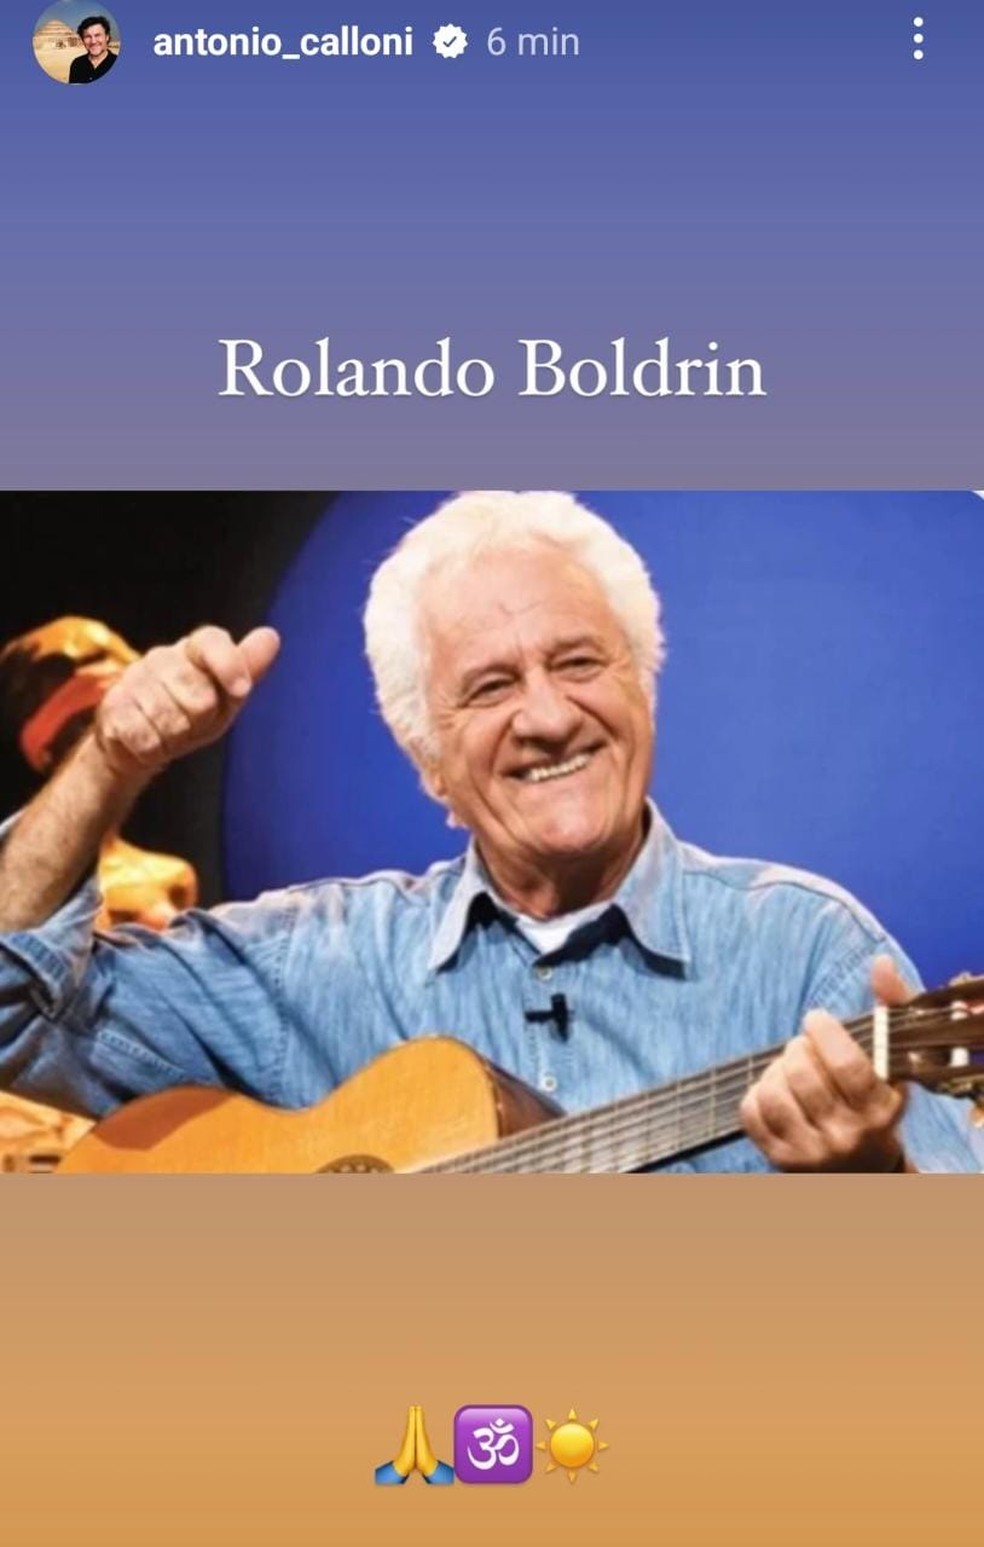 o ator Antonio Calloni presta homenagem a Rolando Boldrin — Foto: Reprodução do Instagram